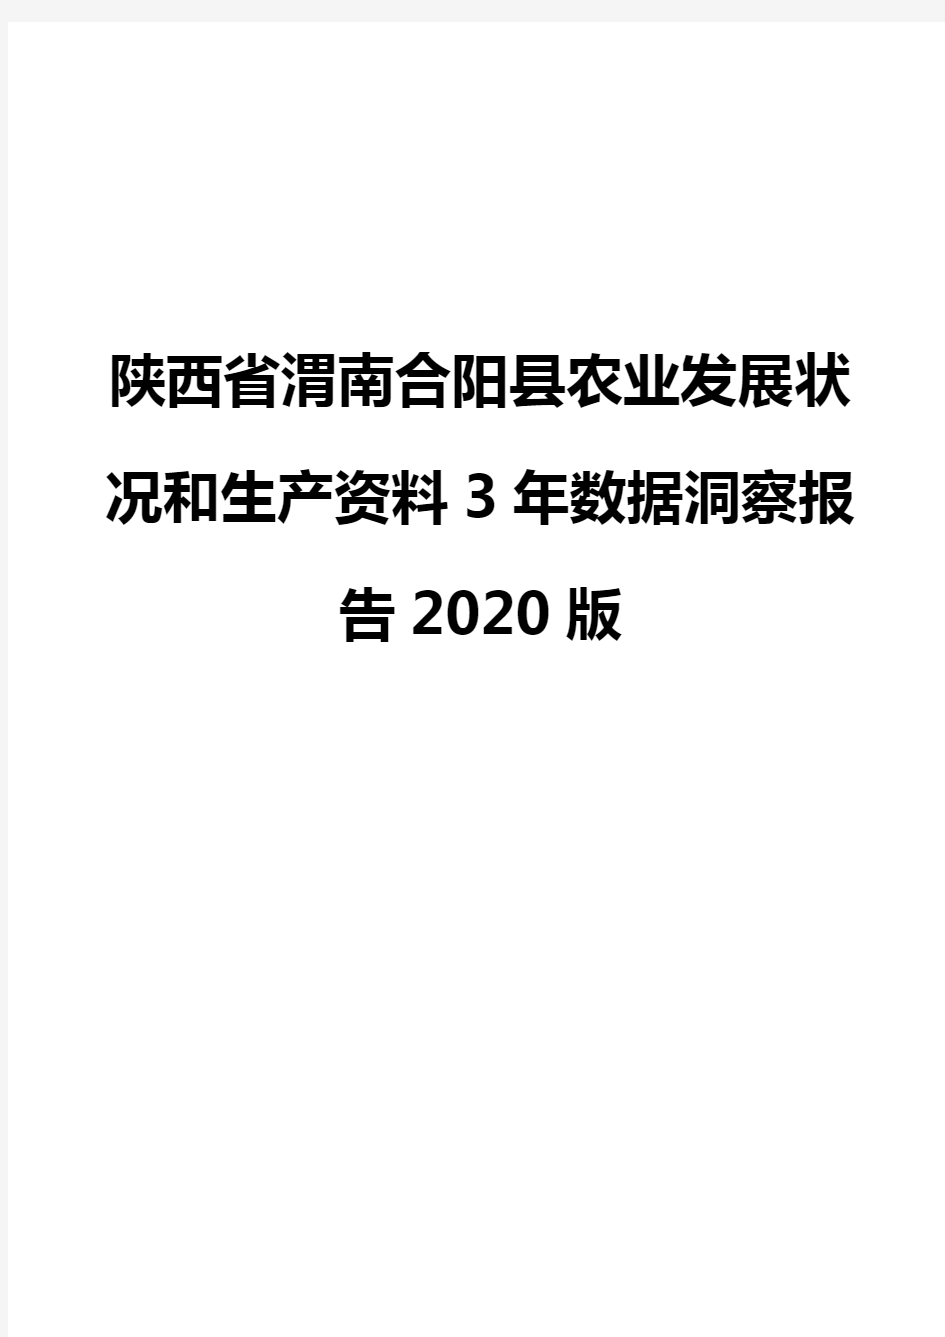 陕西省渭南合阳县农业发展状况和生产资料3年数据洞察报告2020版